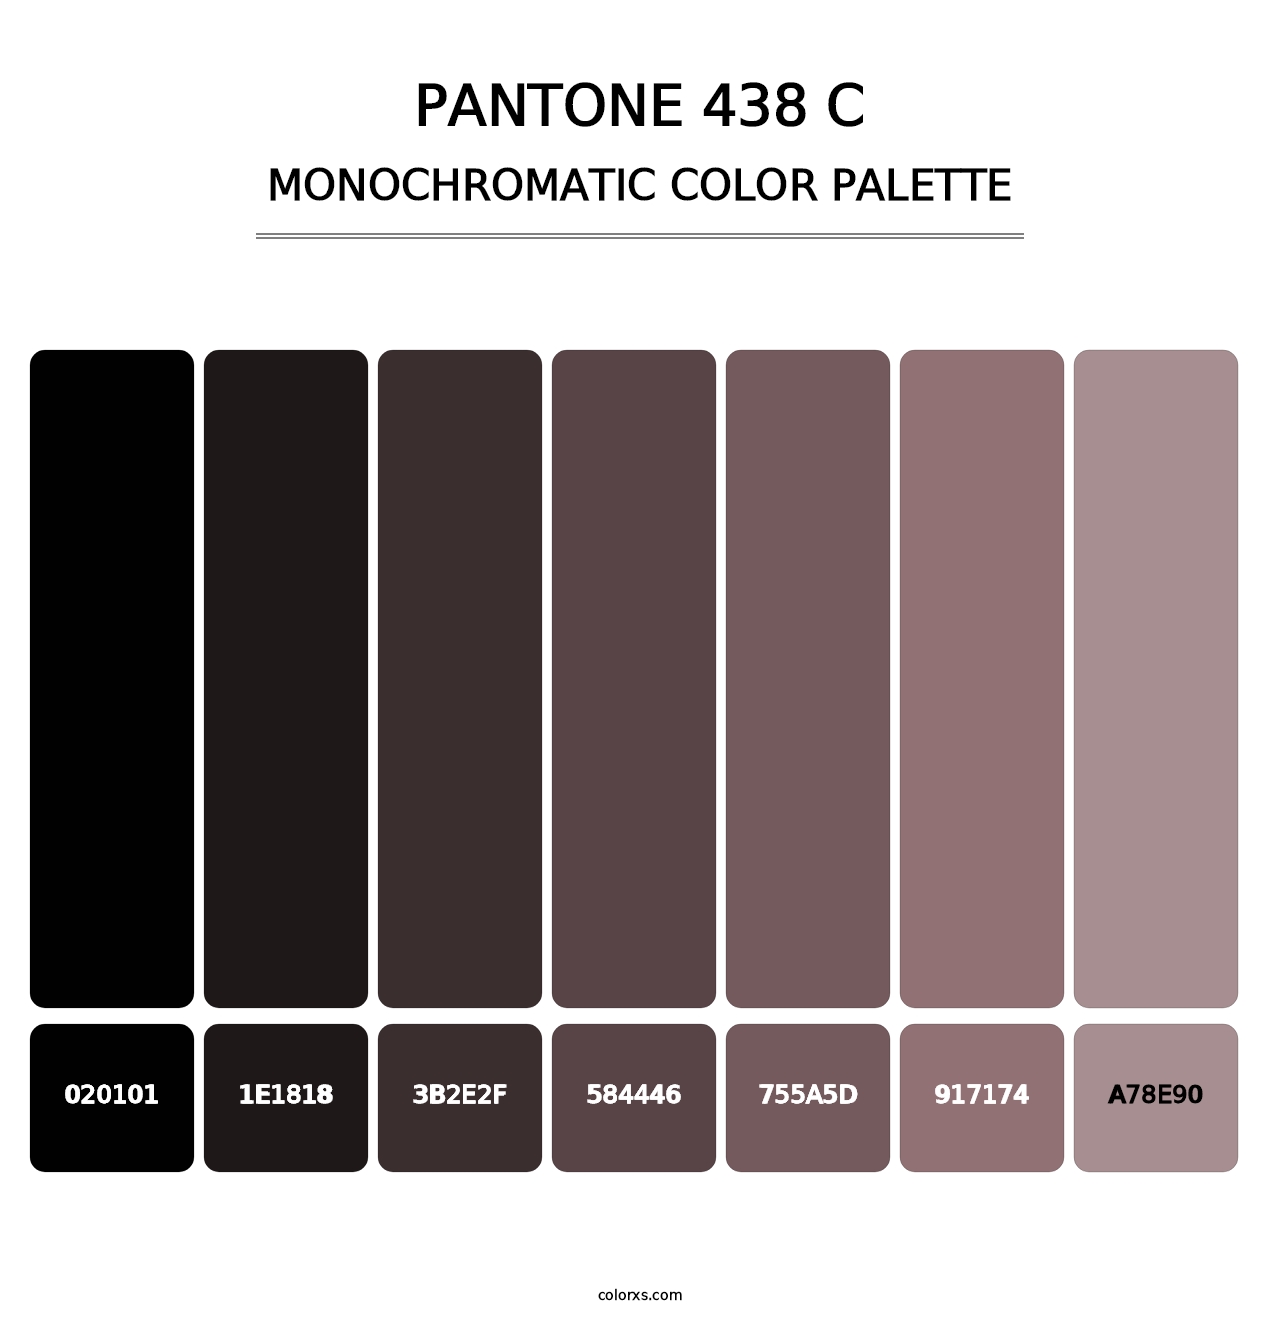 PANTONE 438 C - Monochromatic Color Palette